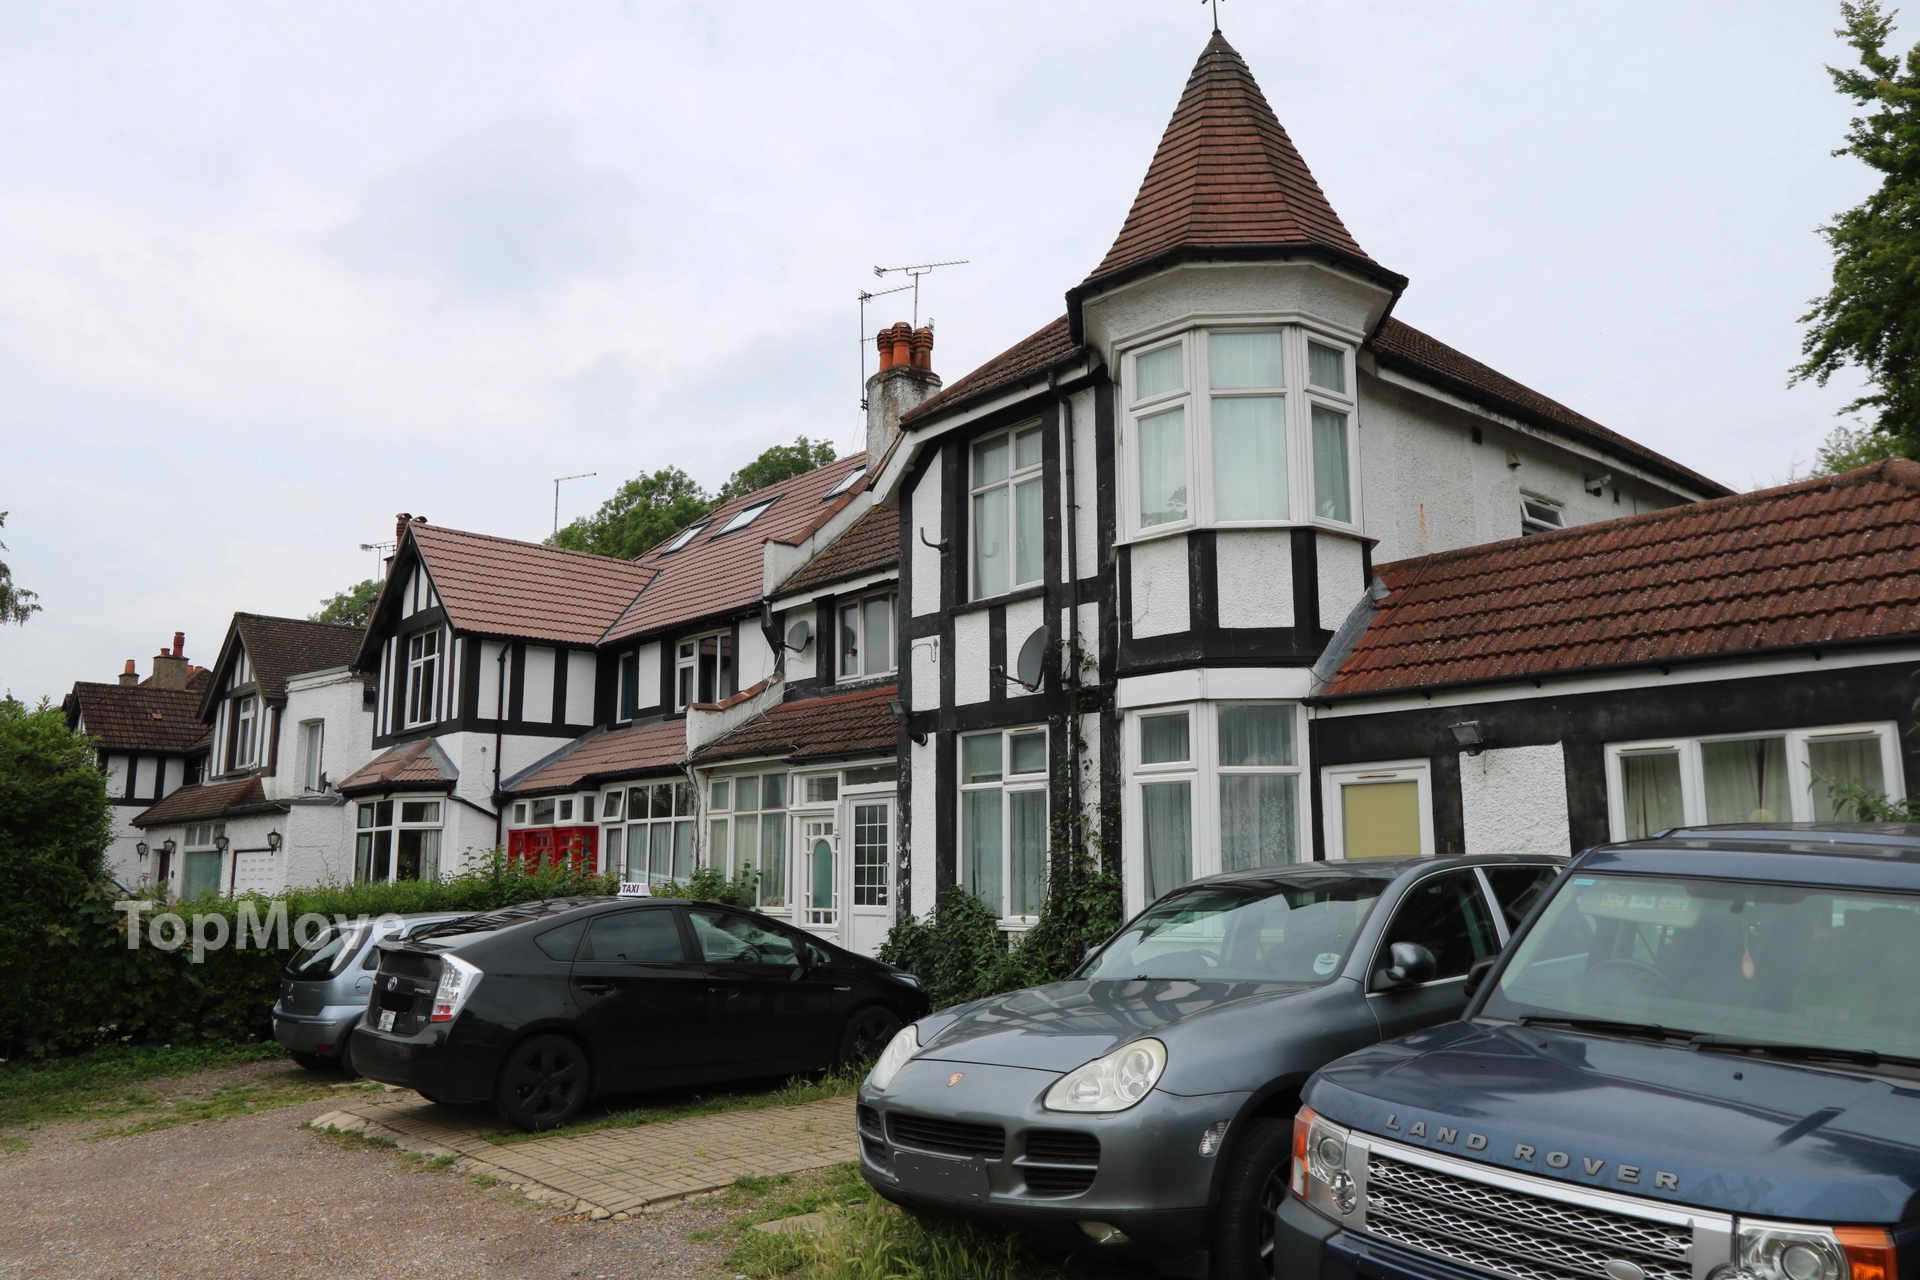 2 bedrooms flat, 2 Brighton Road Coulsdon Croydon Surrey